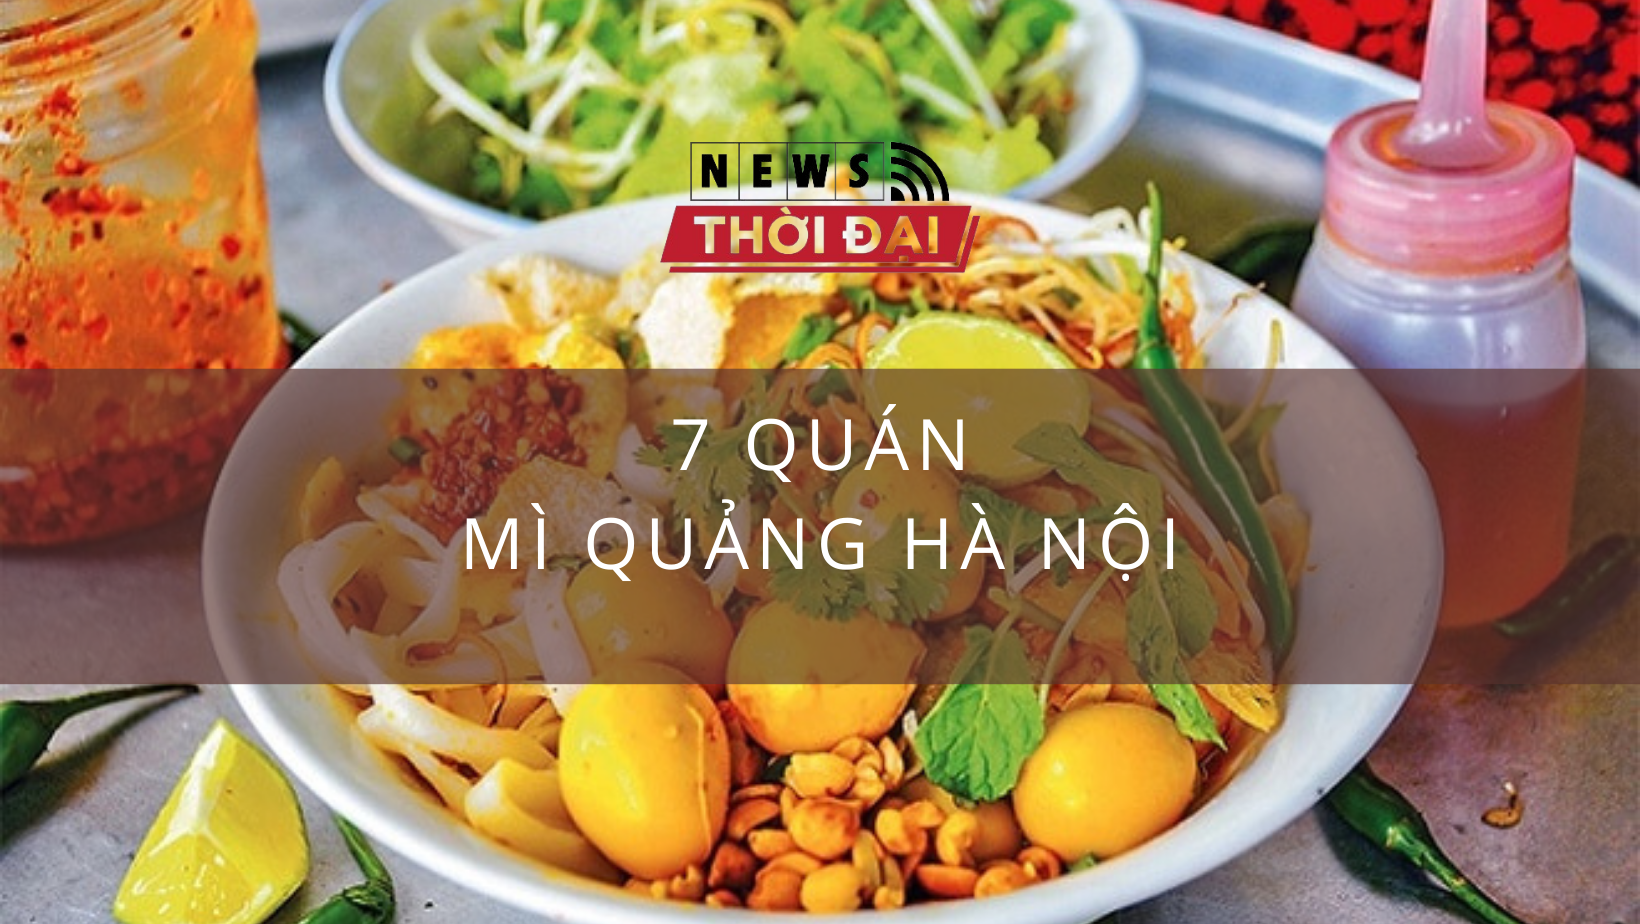 Trải nghiệm 7 quán ẩm thực miền Trung với mì quảng Hà Nội